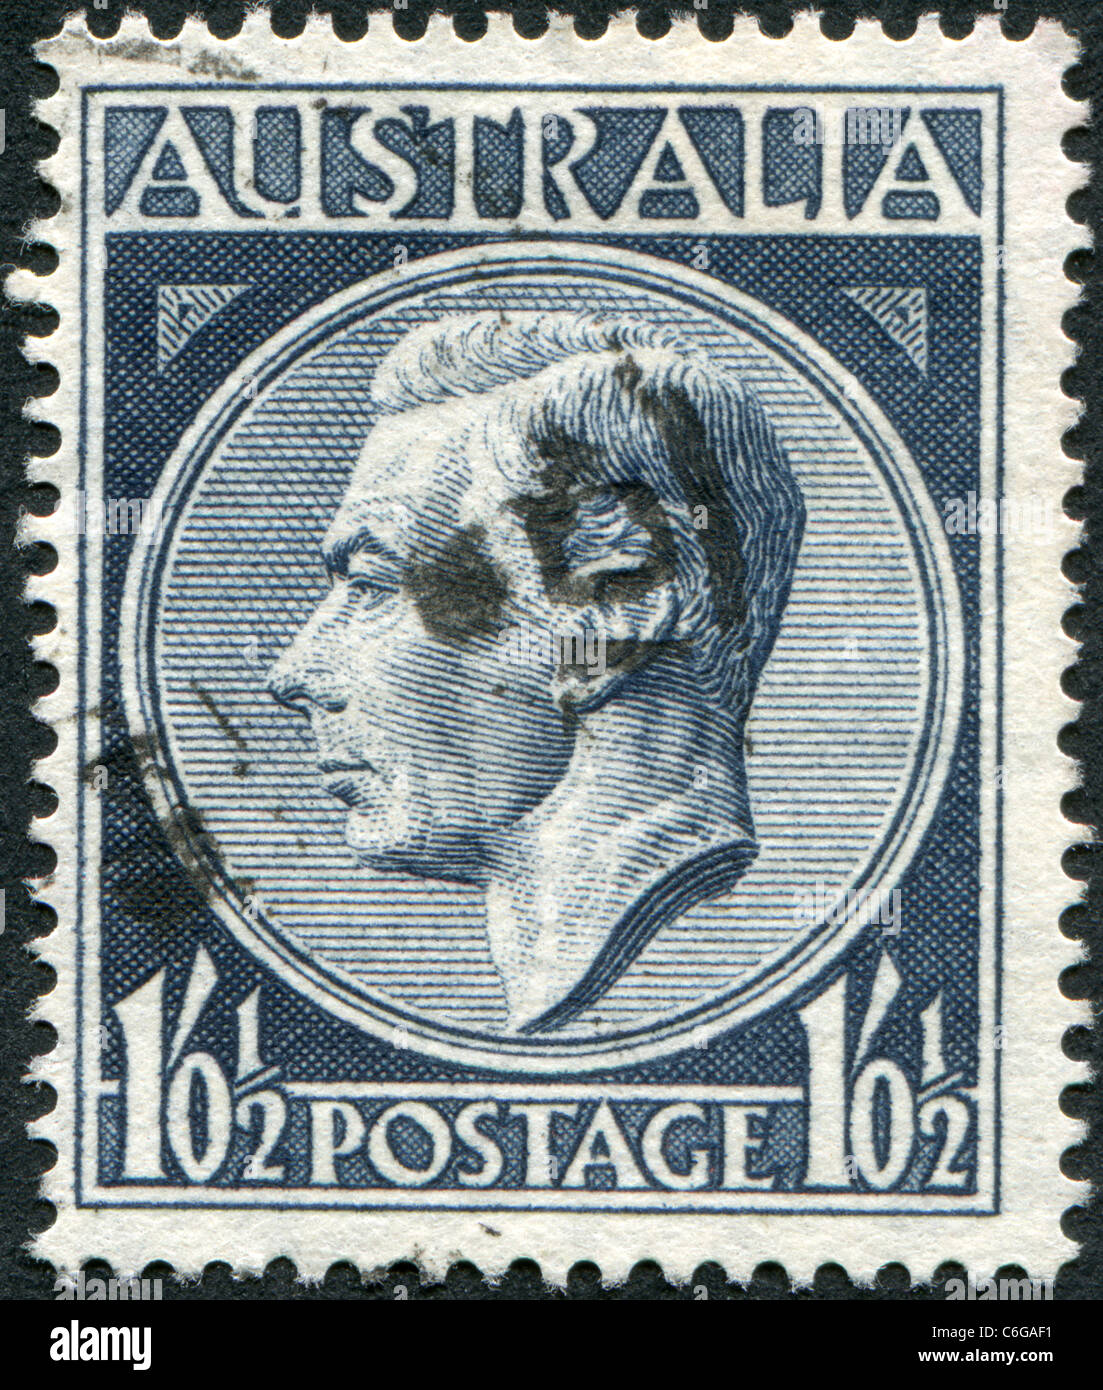 Australien - 1952: Eine Briefmarke gedruckt in Australien zeigt König George VI Stockfoto